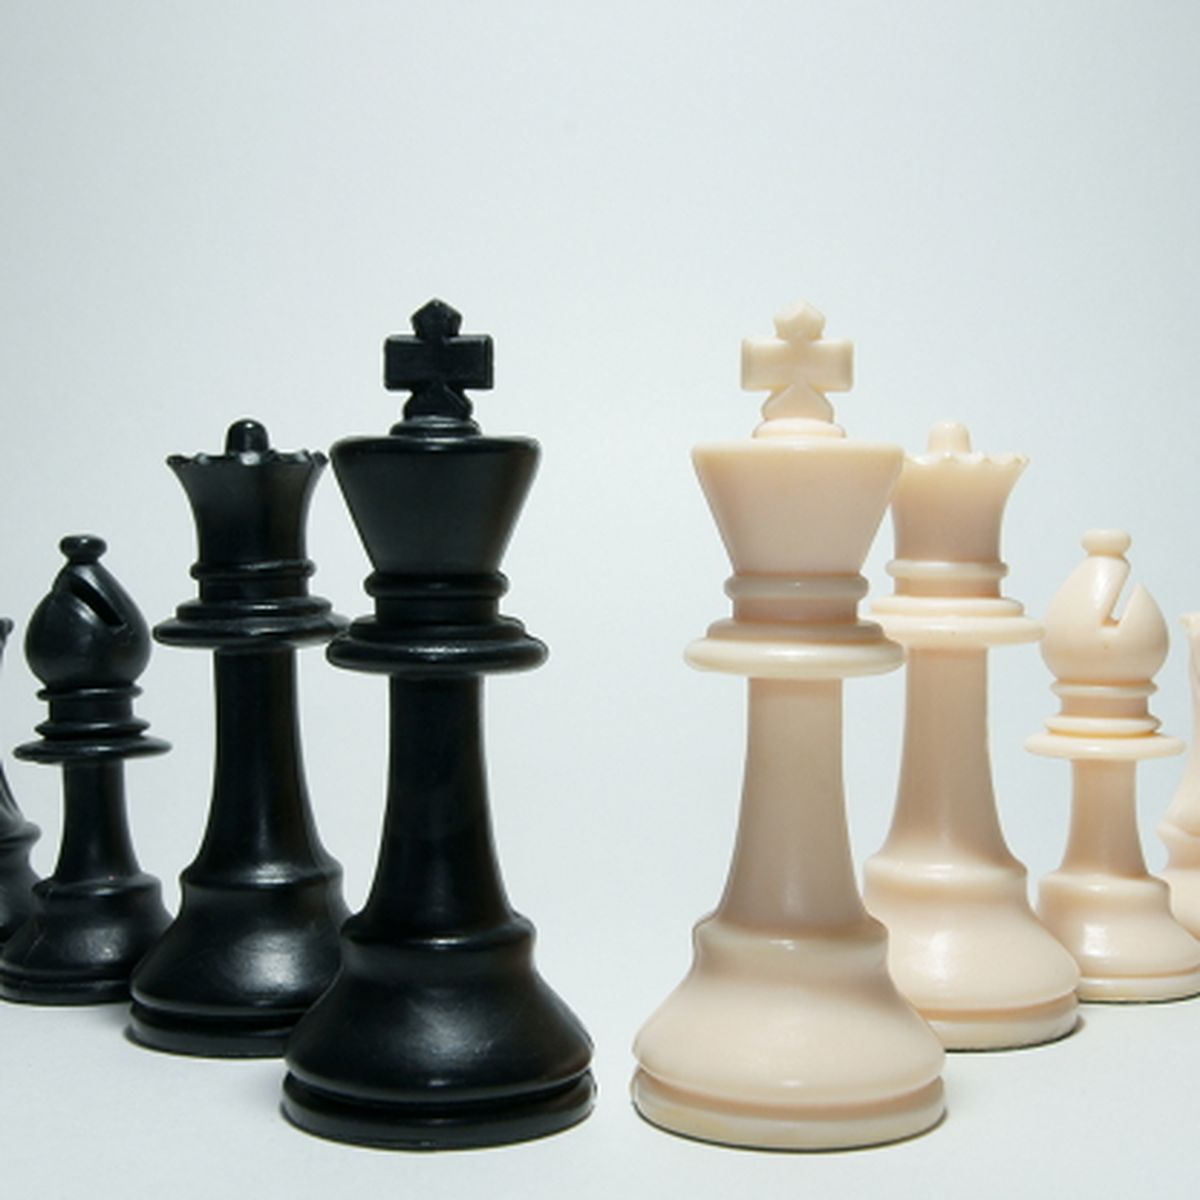 Las mejores plataformas para jugar al ajedrez online